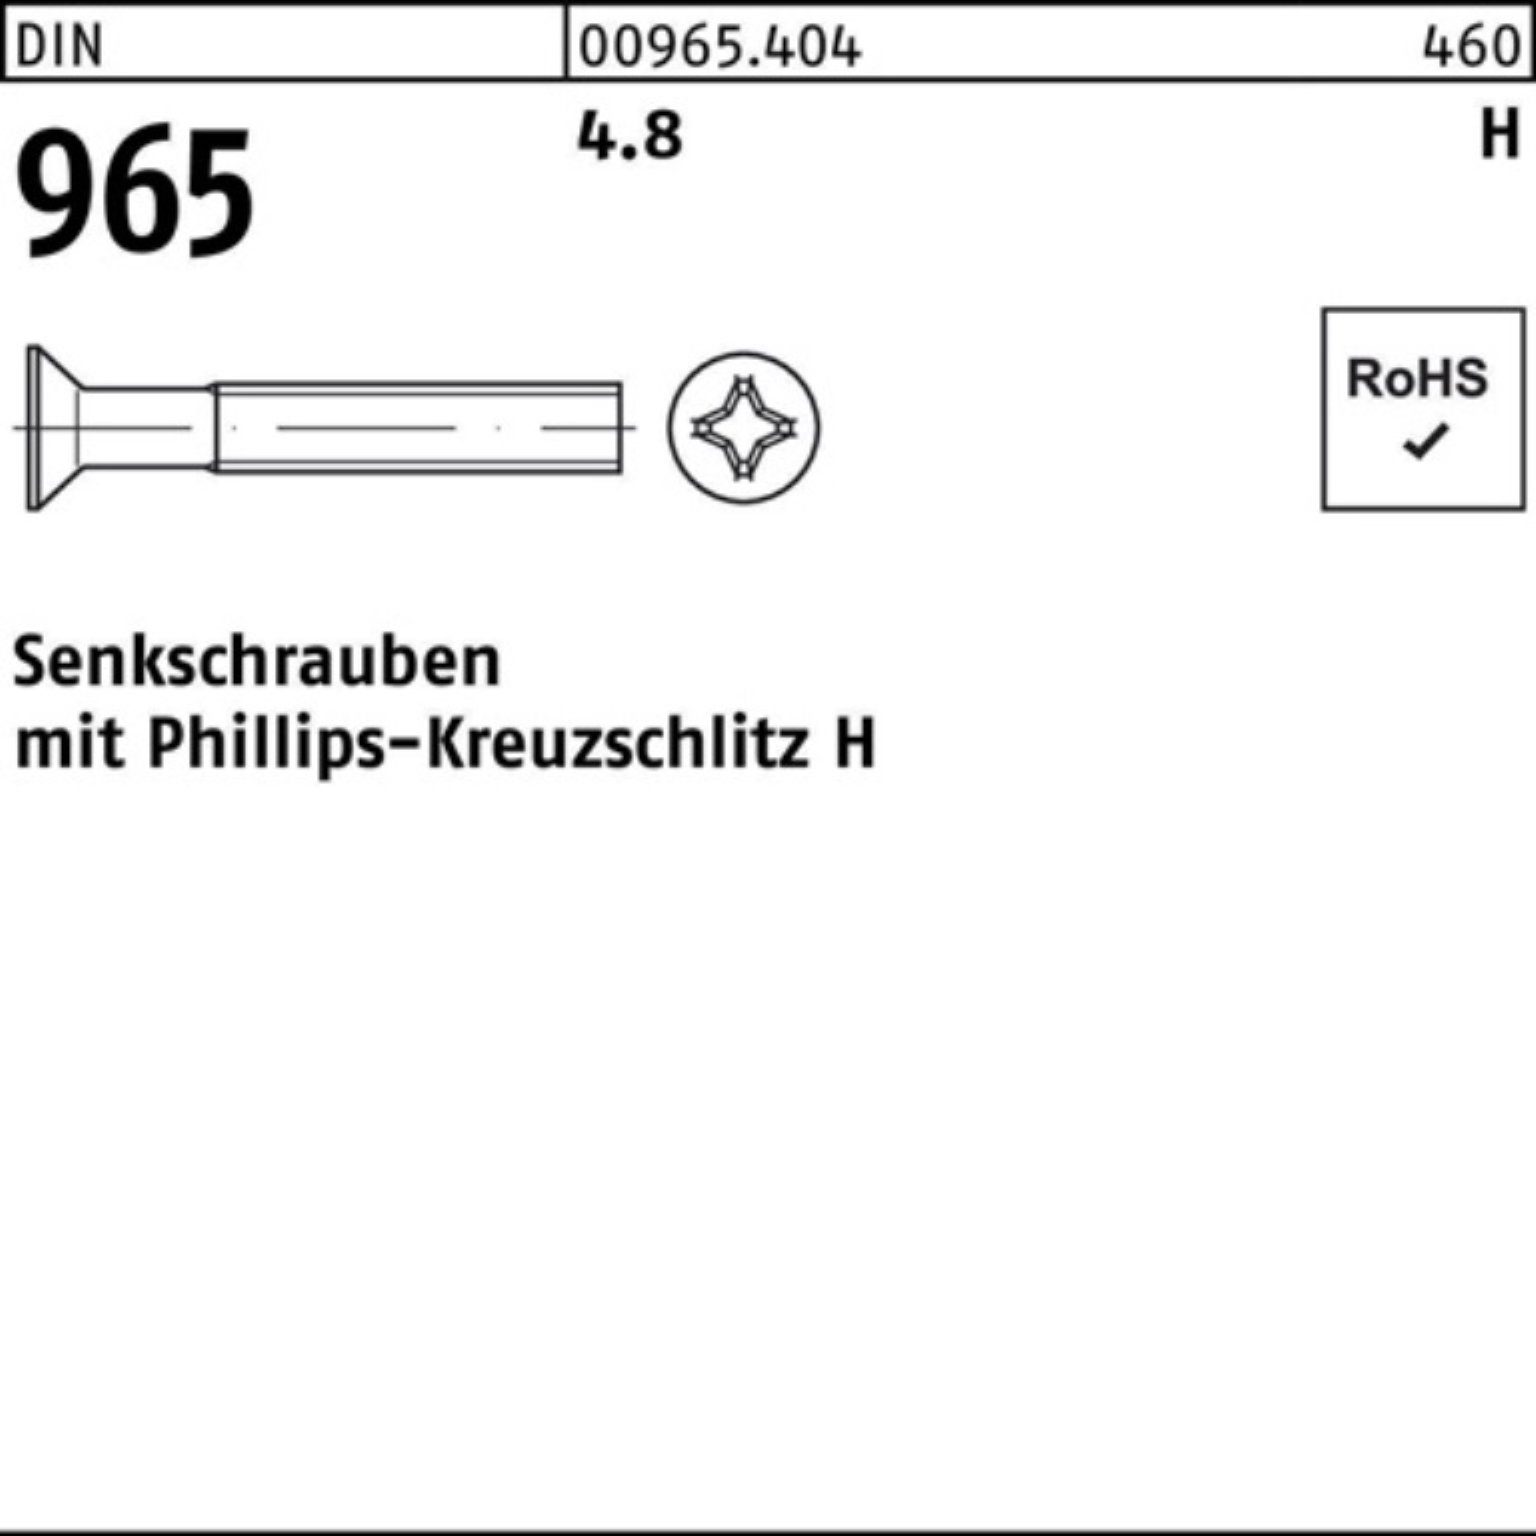 M5x PH 500 Reyher Senkschraube 500er DIN 4.8 DIN Senkschraube 965 965 Pack Stück 40-H 4.8